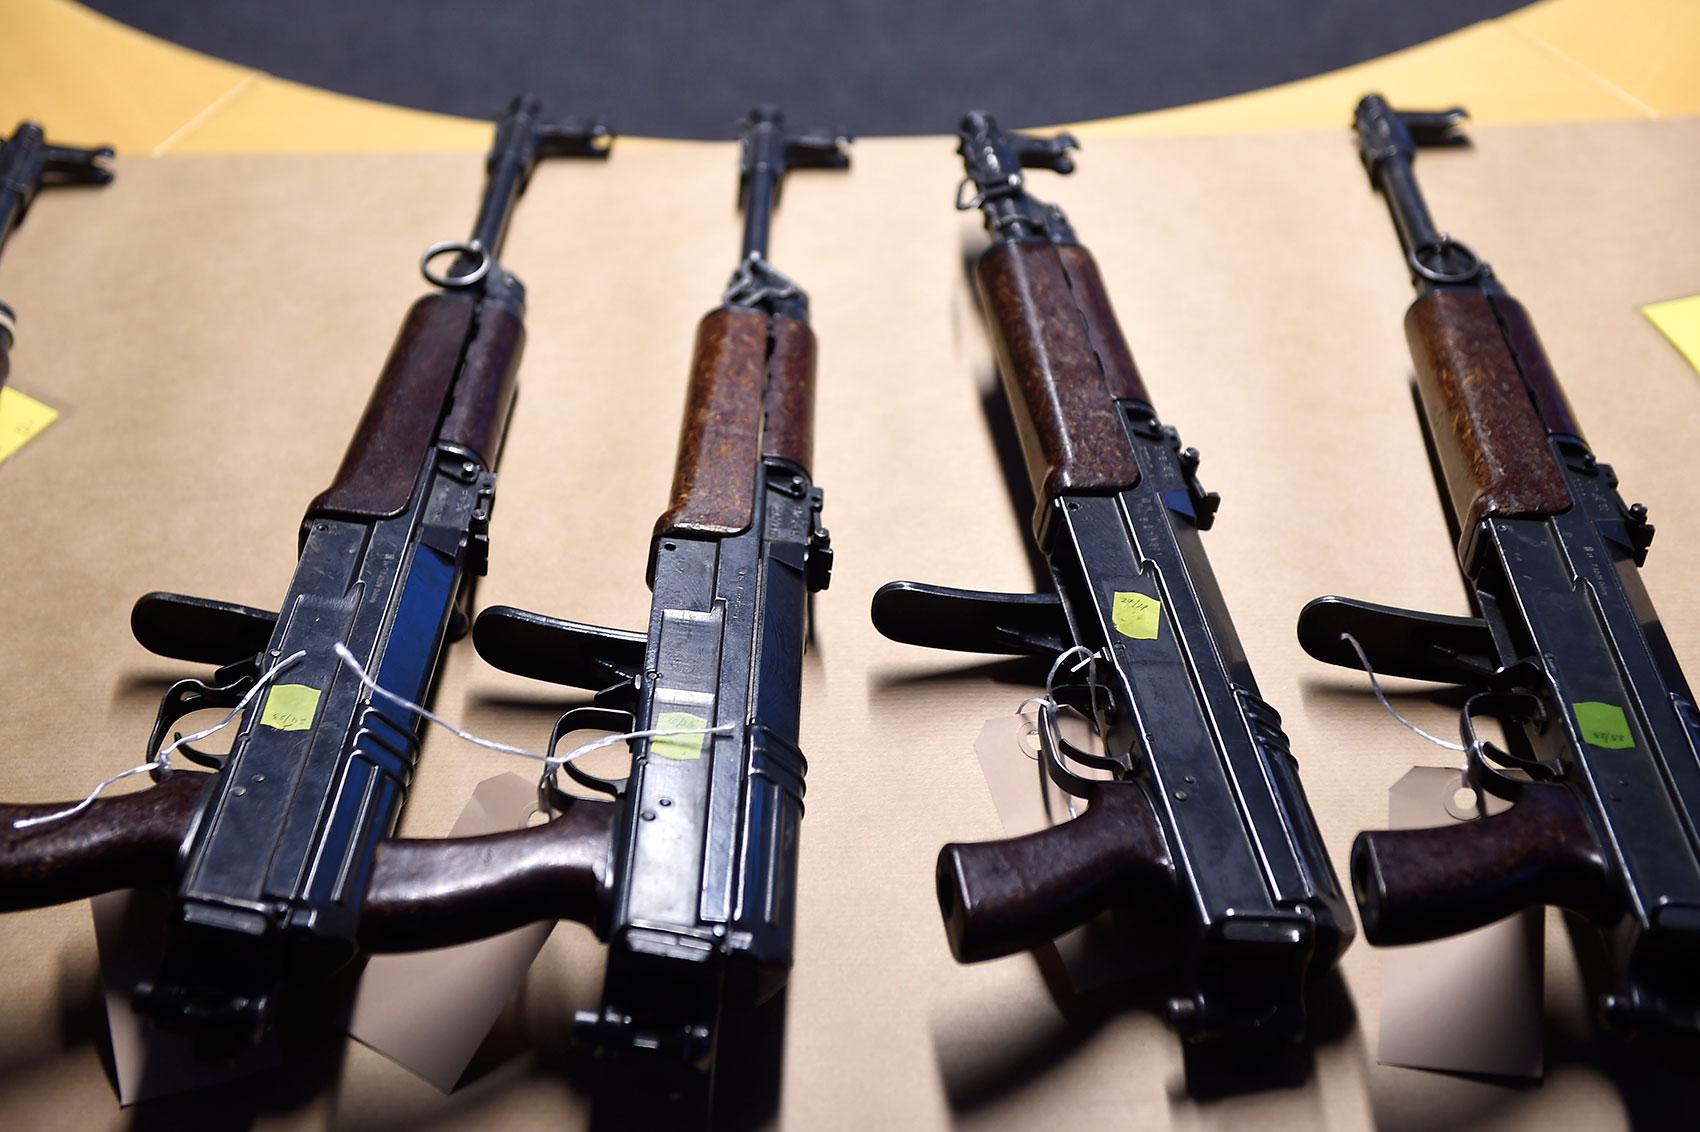 Malmöpolisen visade vid en pressträff upp en del av de vapen som tagits i beslag i Malmö under delar av 2015 och hittills under 2016.